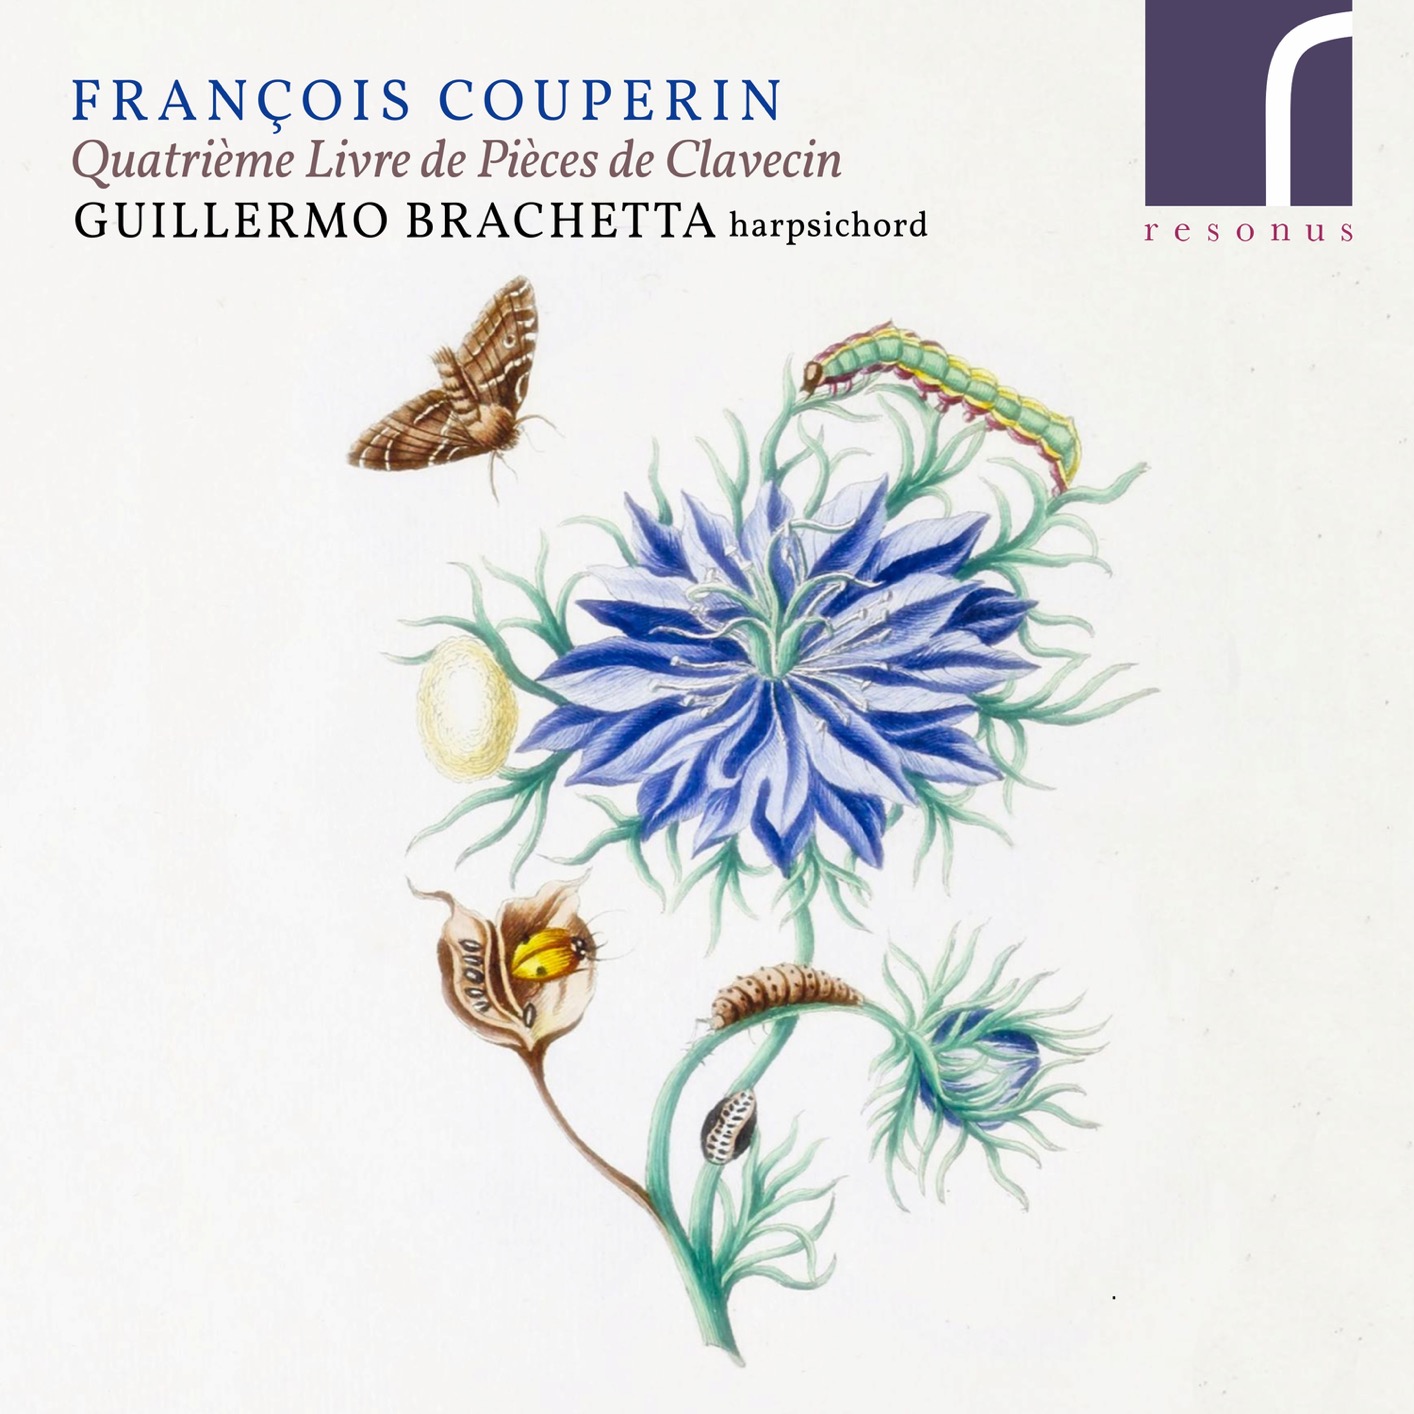 Guillermo Brachetta – Francois Couperin: Quatrieme Livre de Pieces de Clavecin (2019) [FLAC 24bit/96kHz]